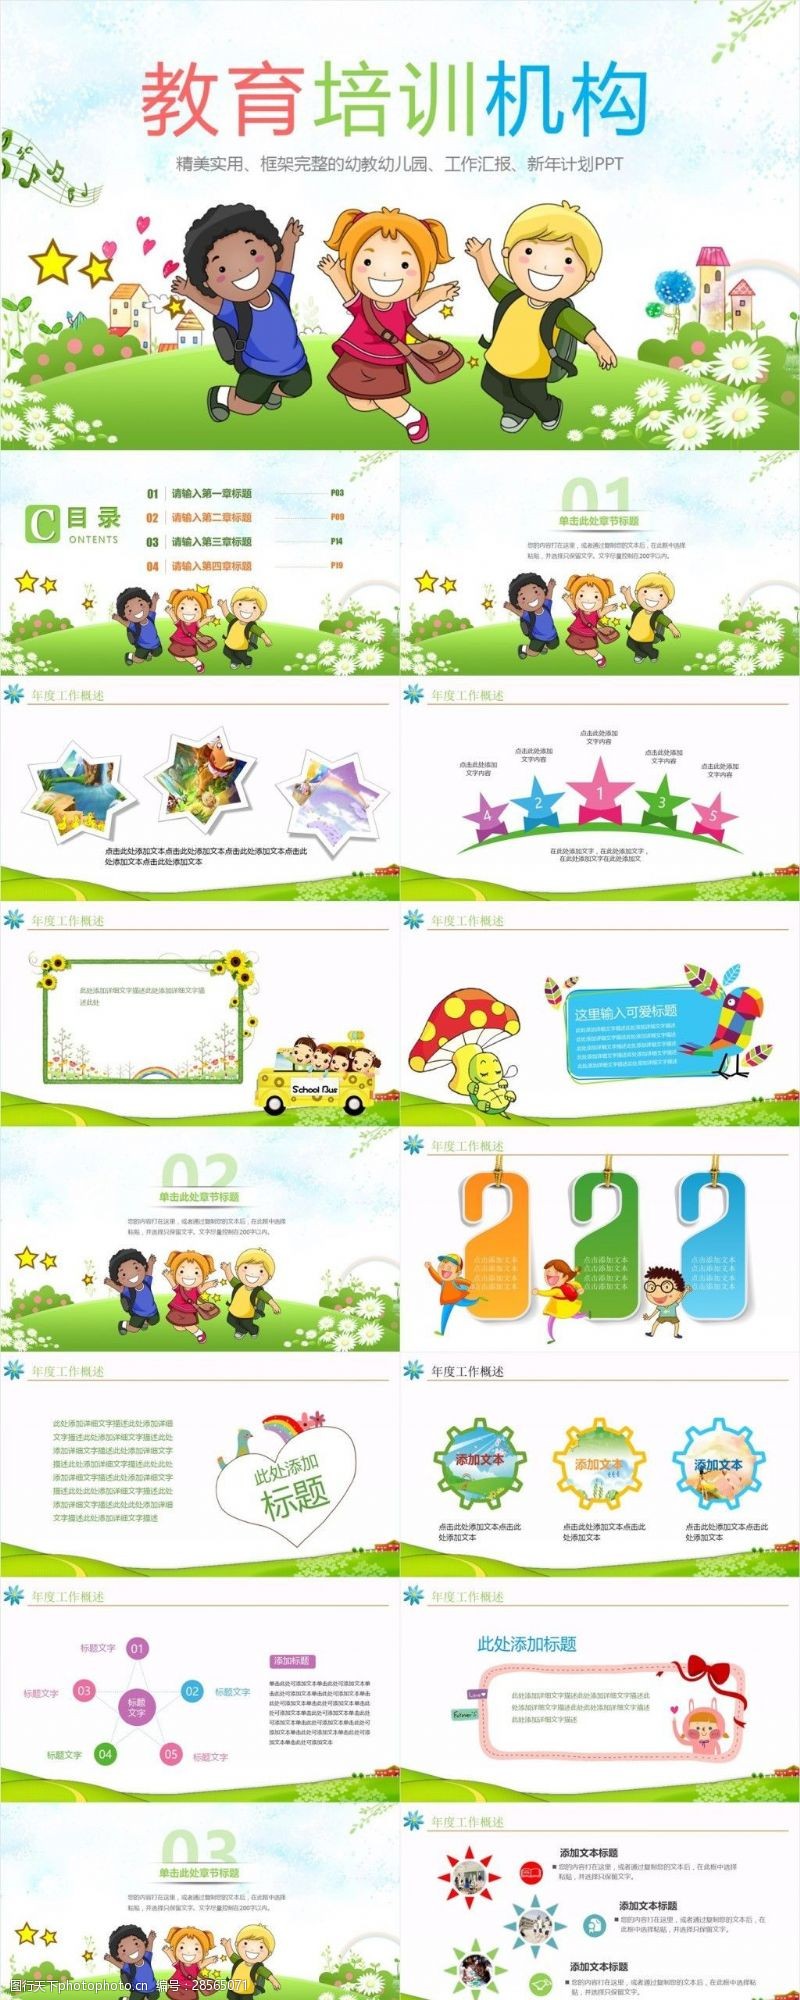 幼儿园模板下载幼儿园工作汇报教育培训卡通风格ppt免费下载